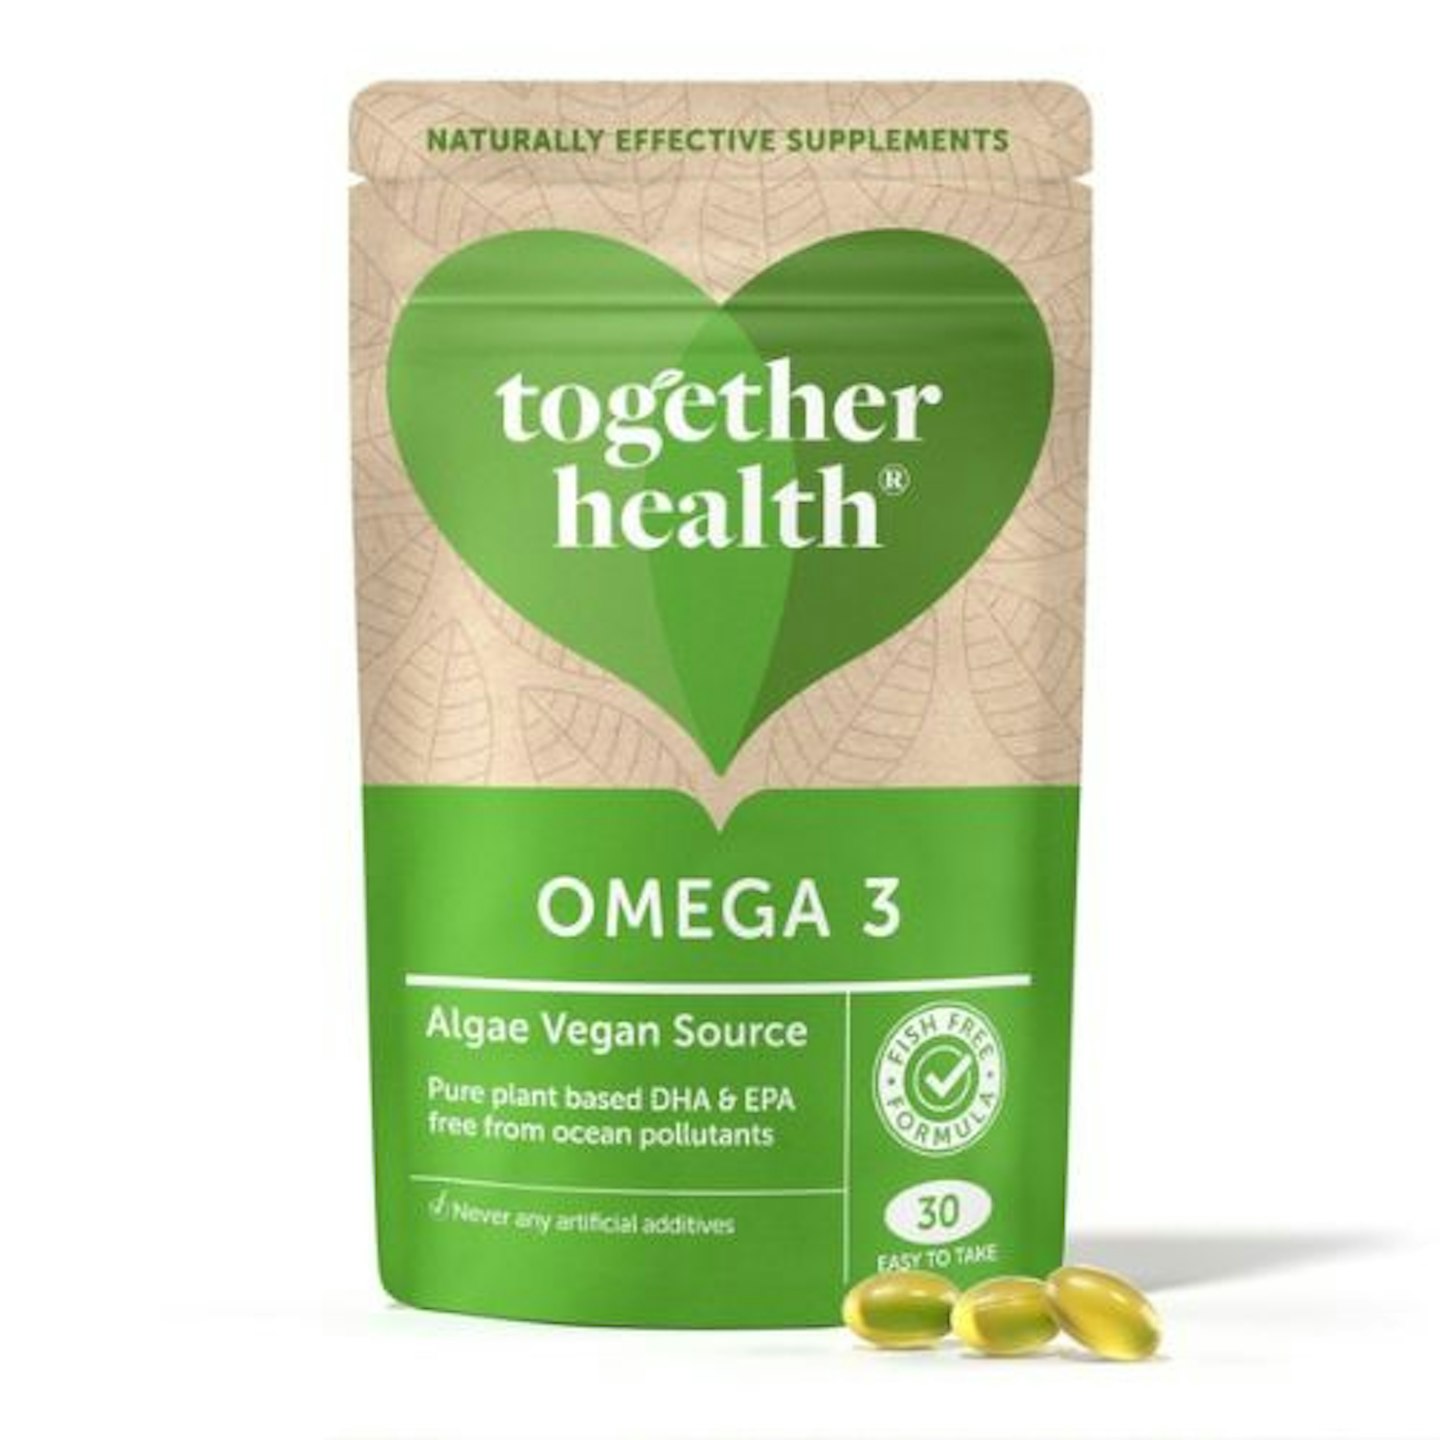 Together Health Omega-3 Algae Vegan Source, 30 Softgels